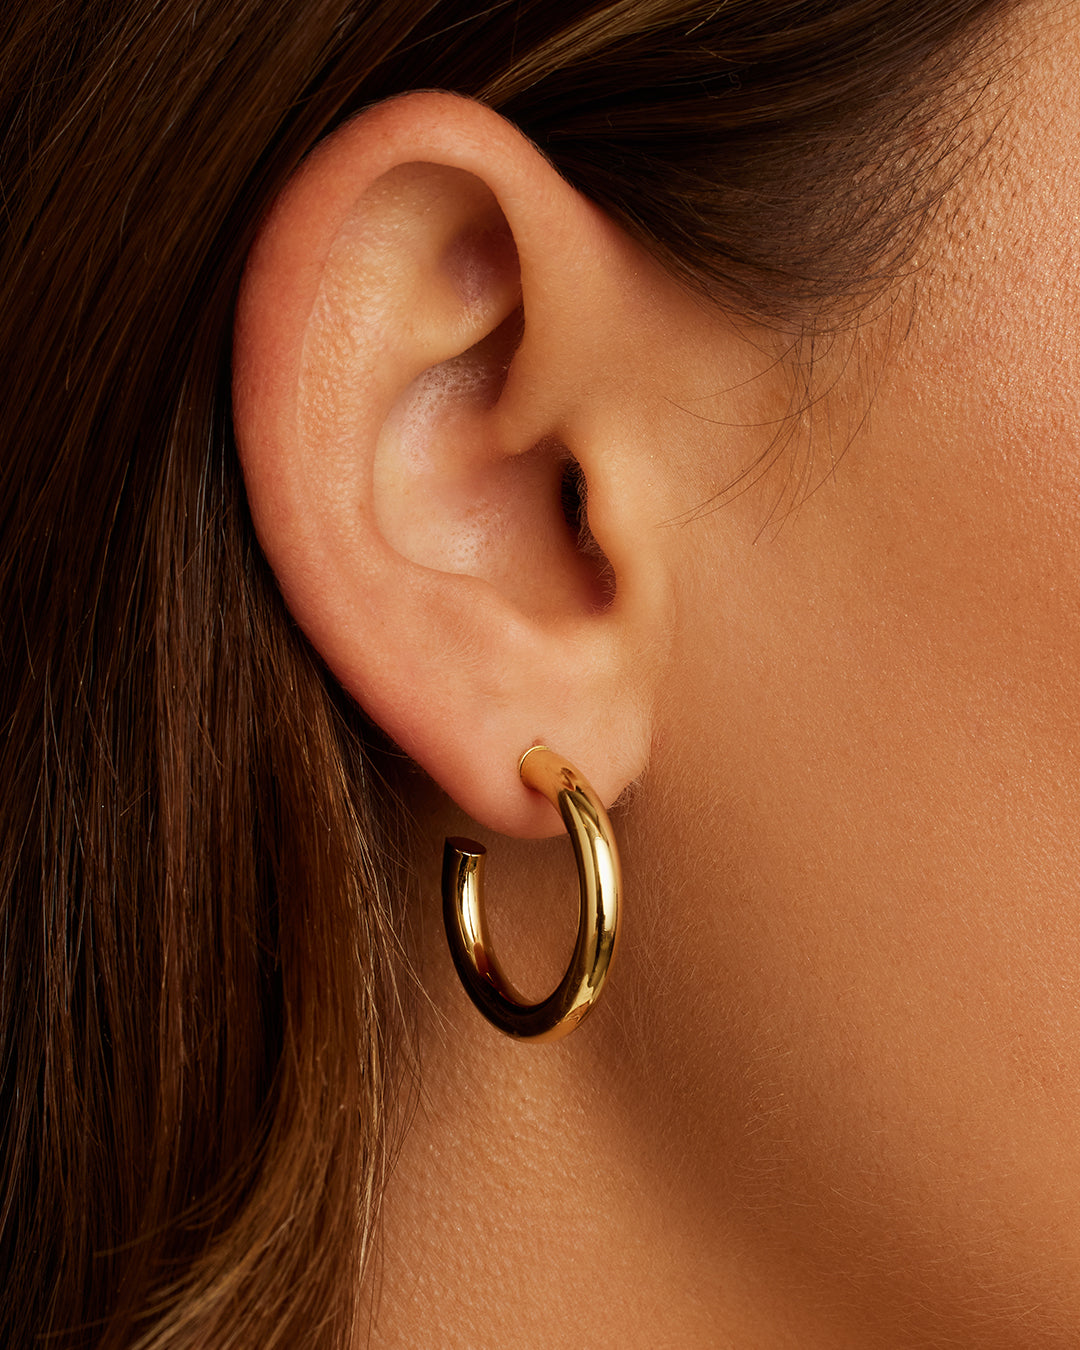  Ascona Small Chunky Gold Hoop Earrings for Women Girls